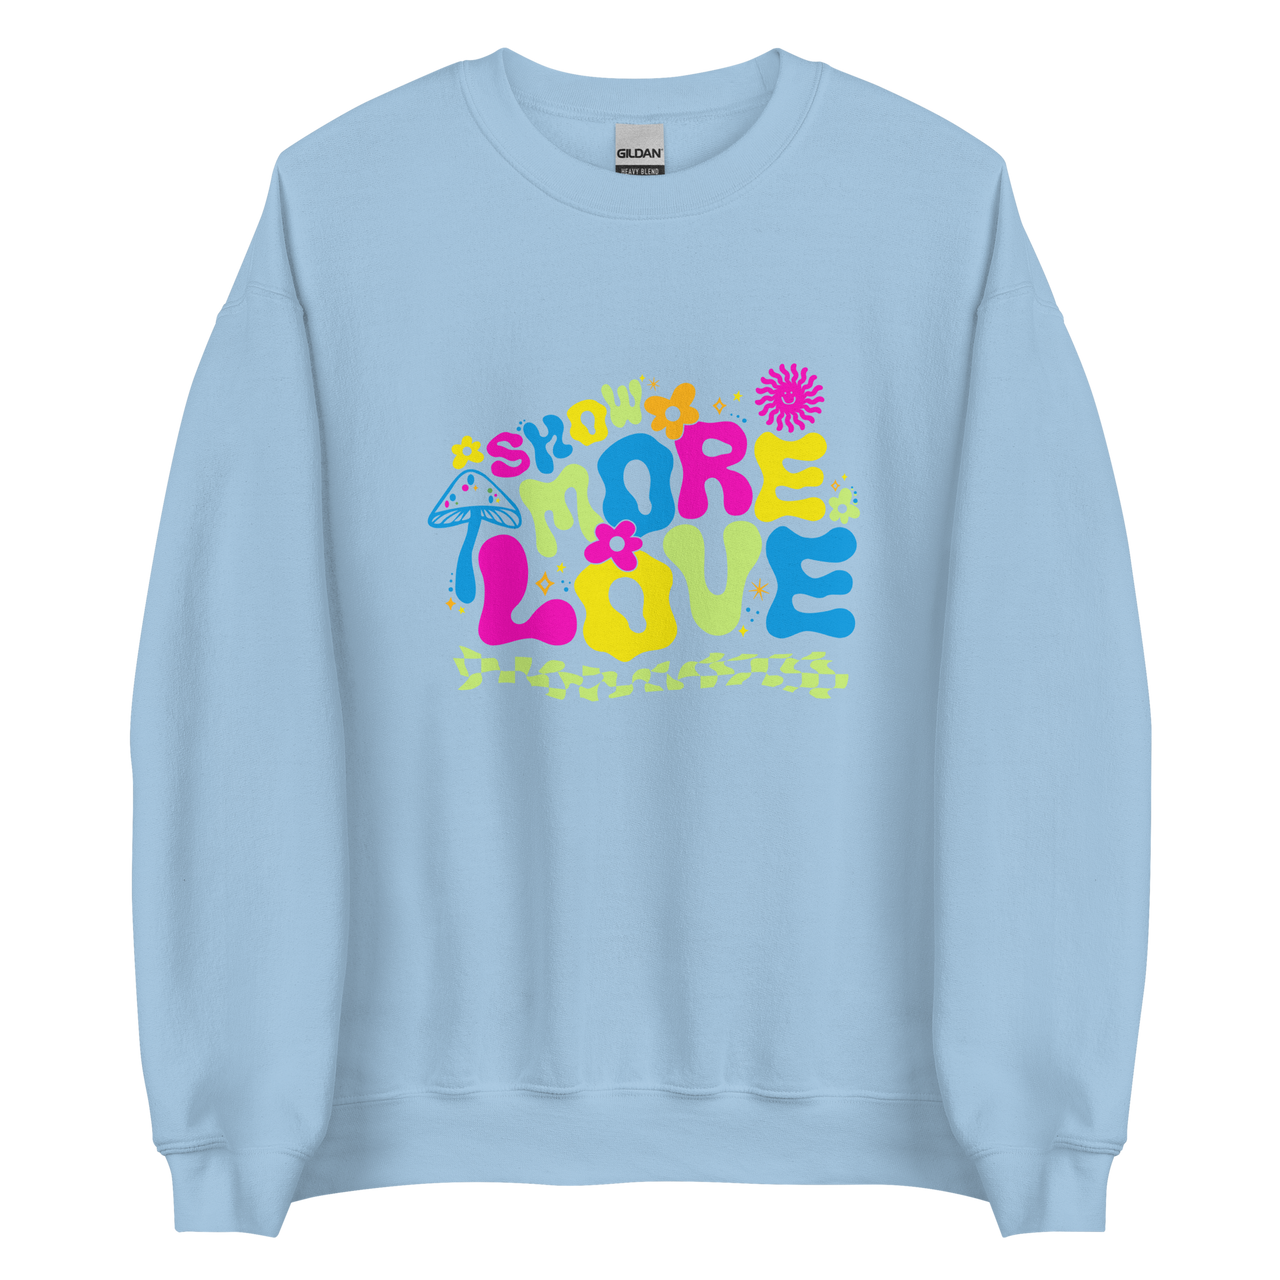 Show More Love Color Crewneck Sweatshirt